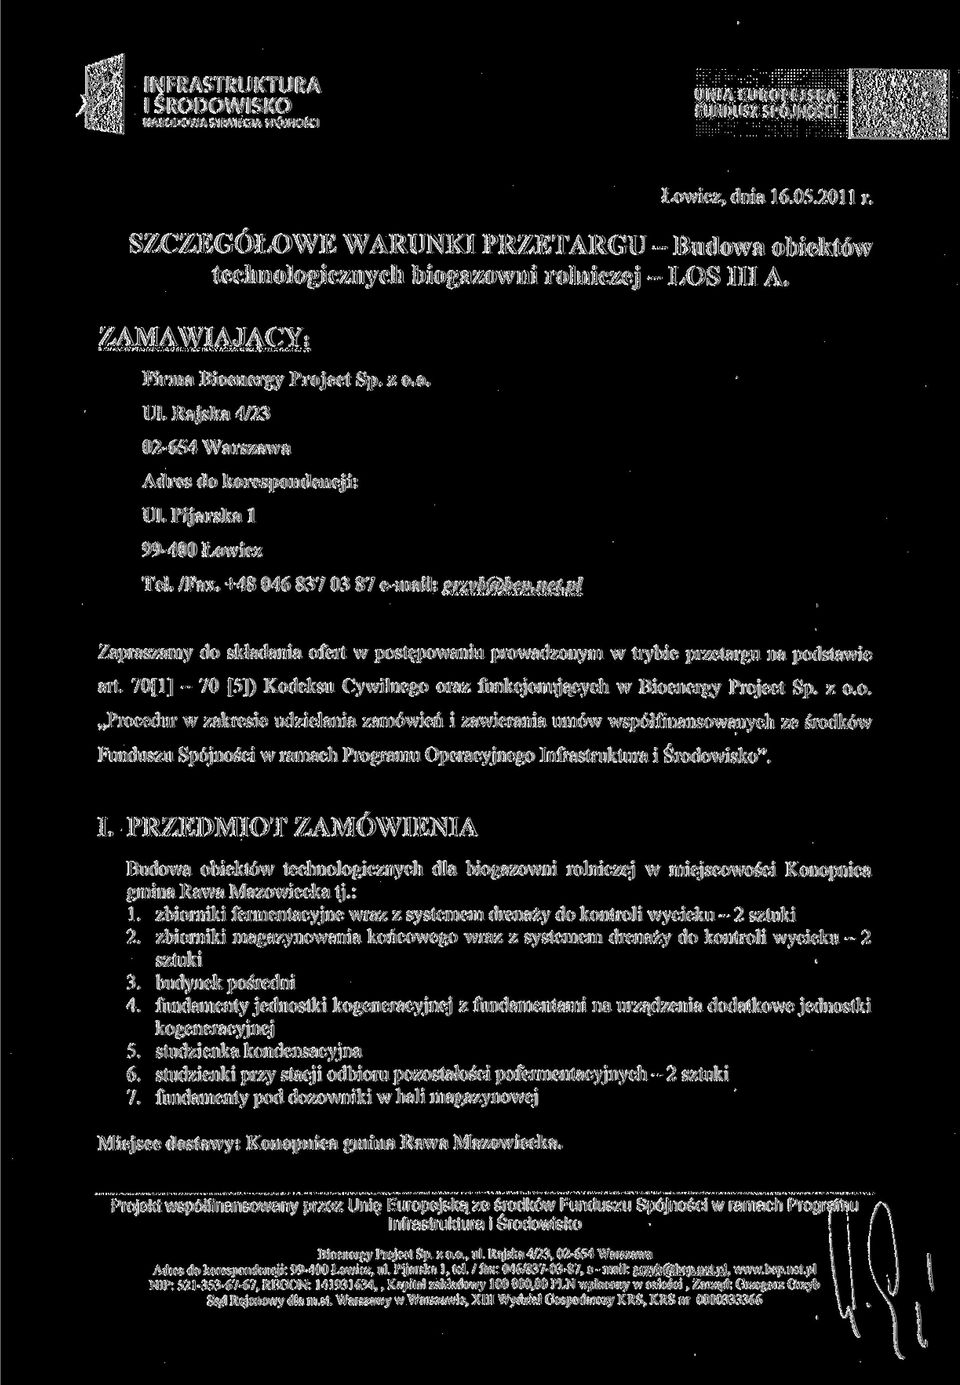 Rajska 4/23 02-654 Warszawa Adres do korespondencji: UL Pijarska l 99-400 Łowicz Tel. /Fax. +48 046 837 03 87 e-mail: srzvb(a)bed.net.